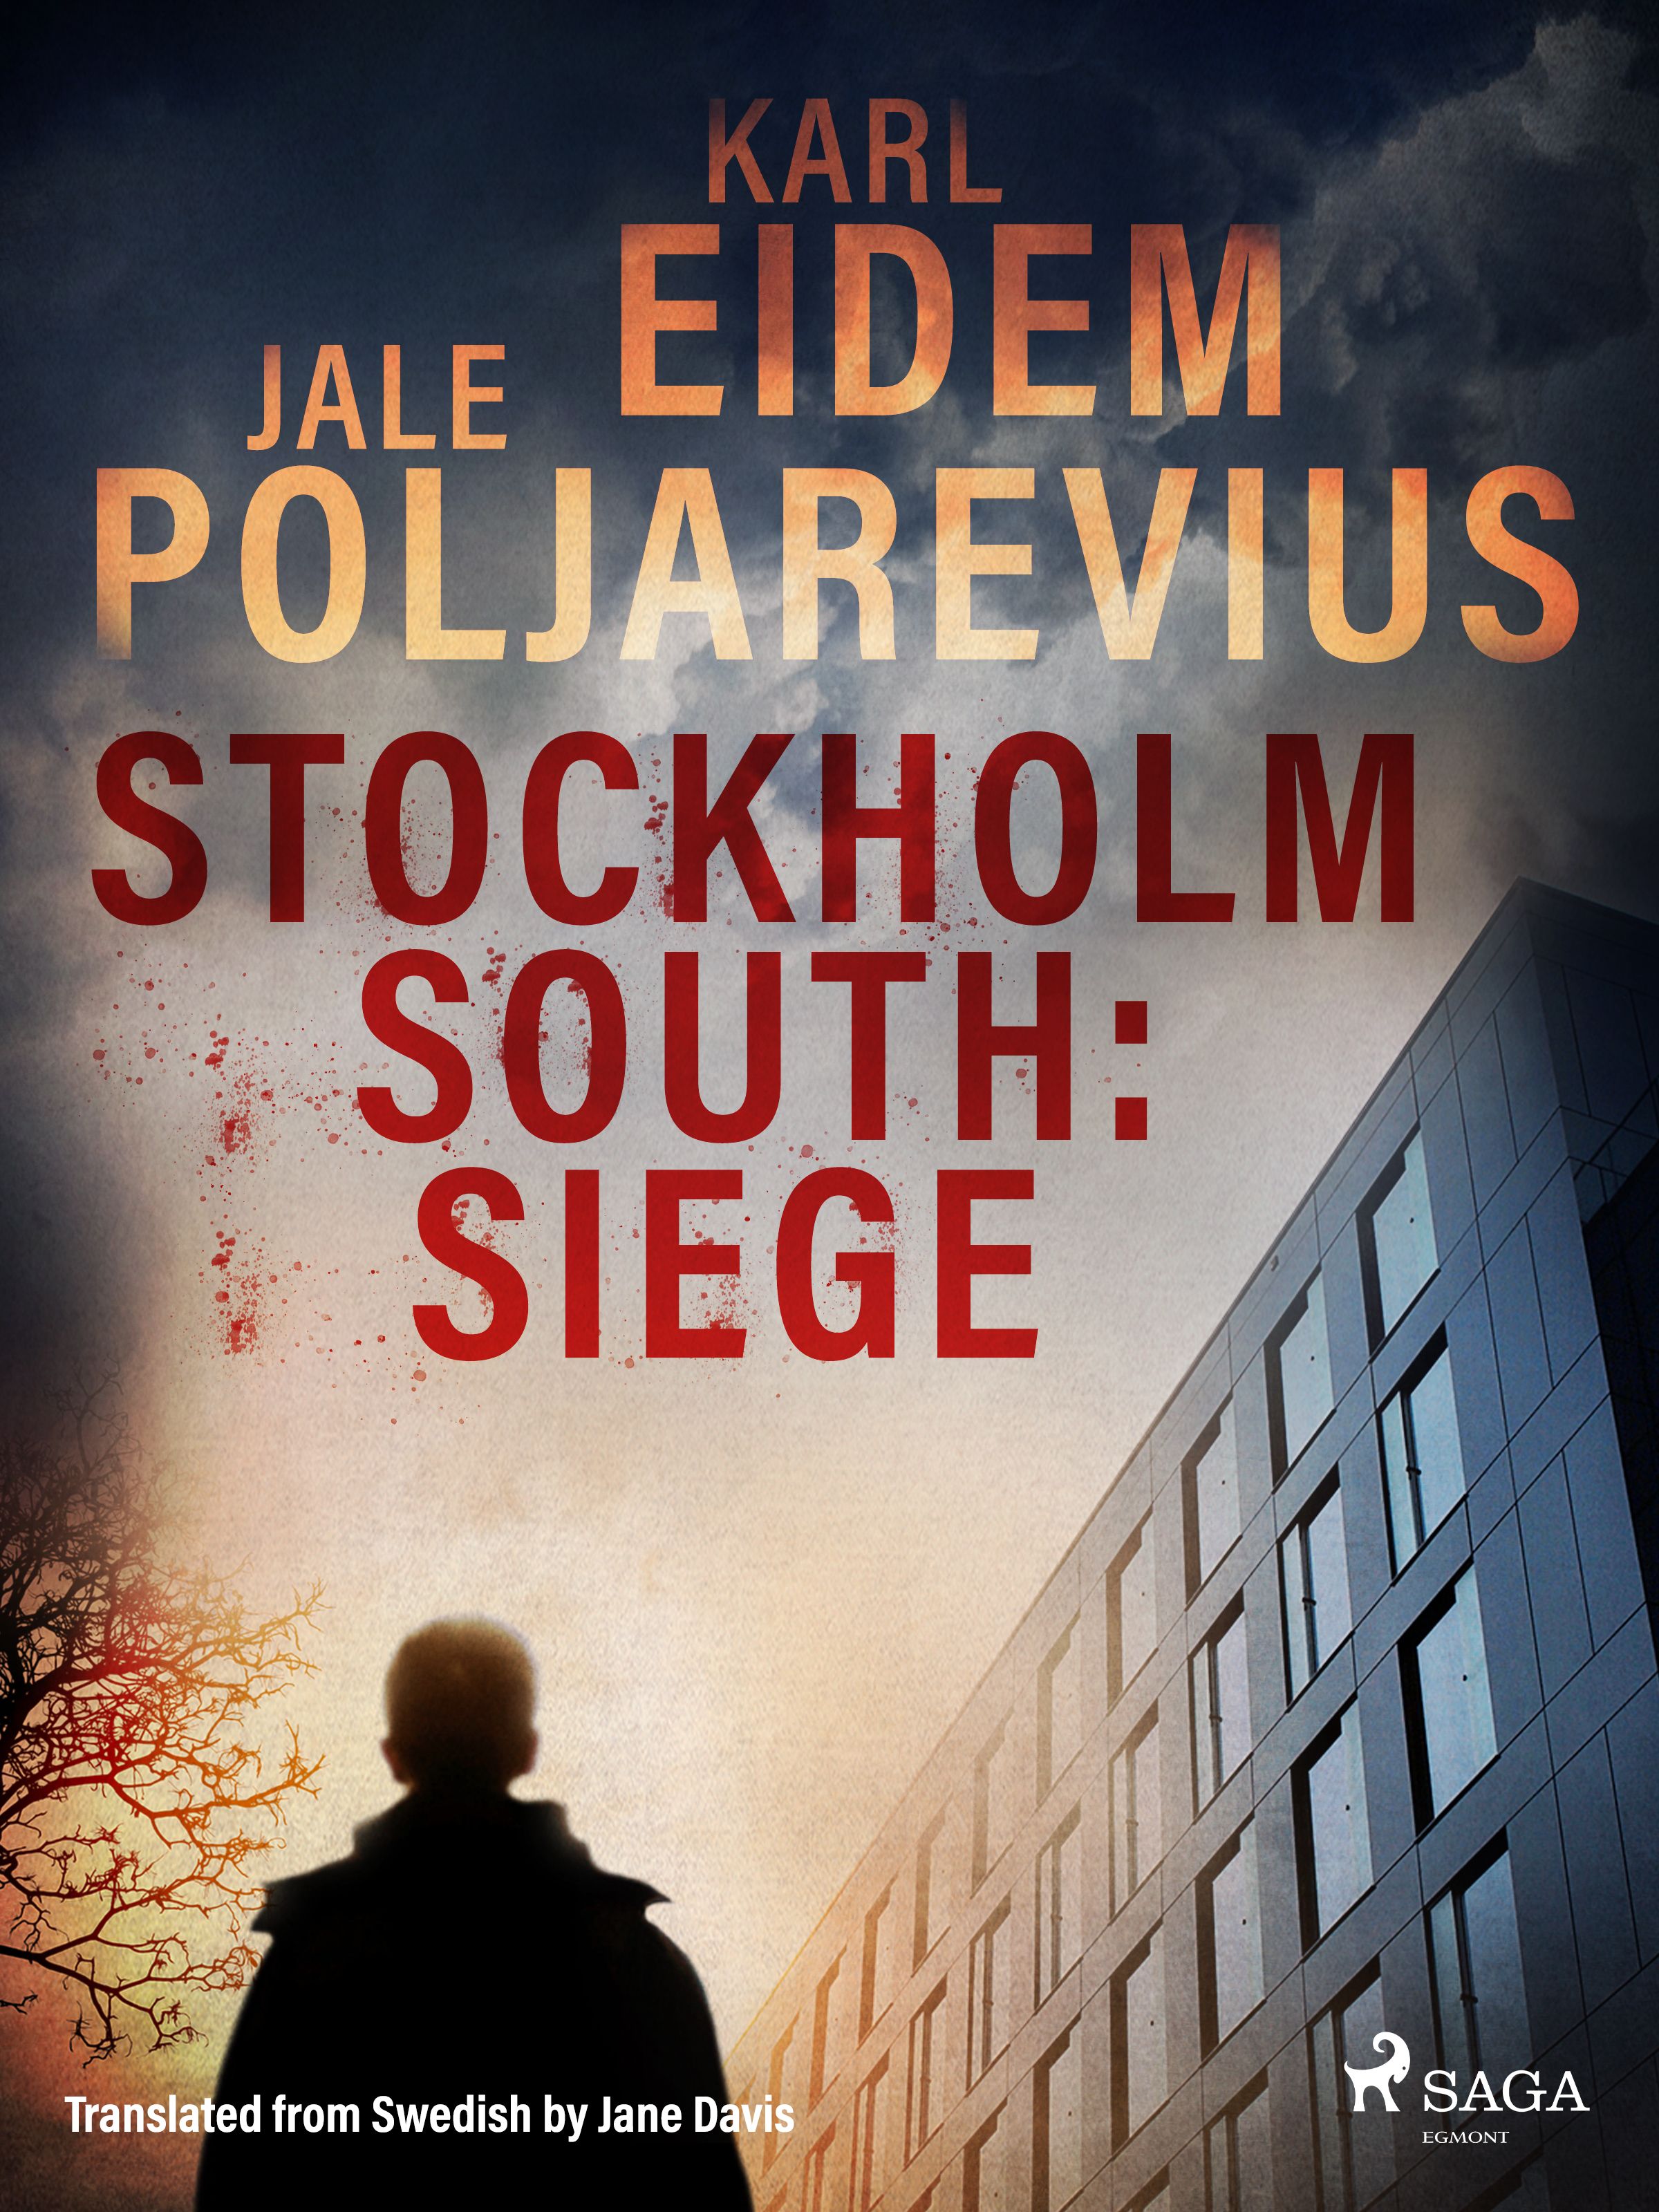 Stockholm South: Siege, e-bog af Karl Eidem, Jale Poljarevius